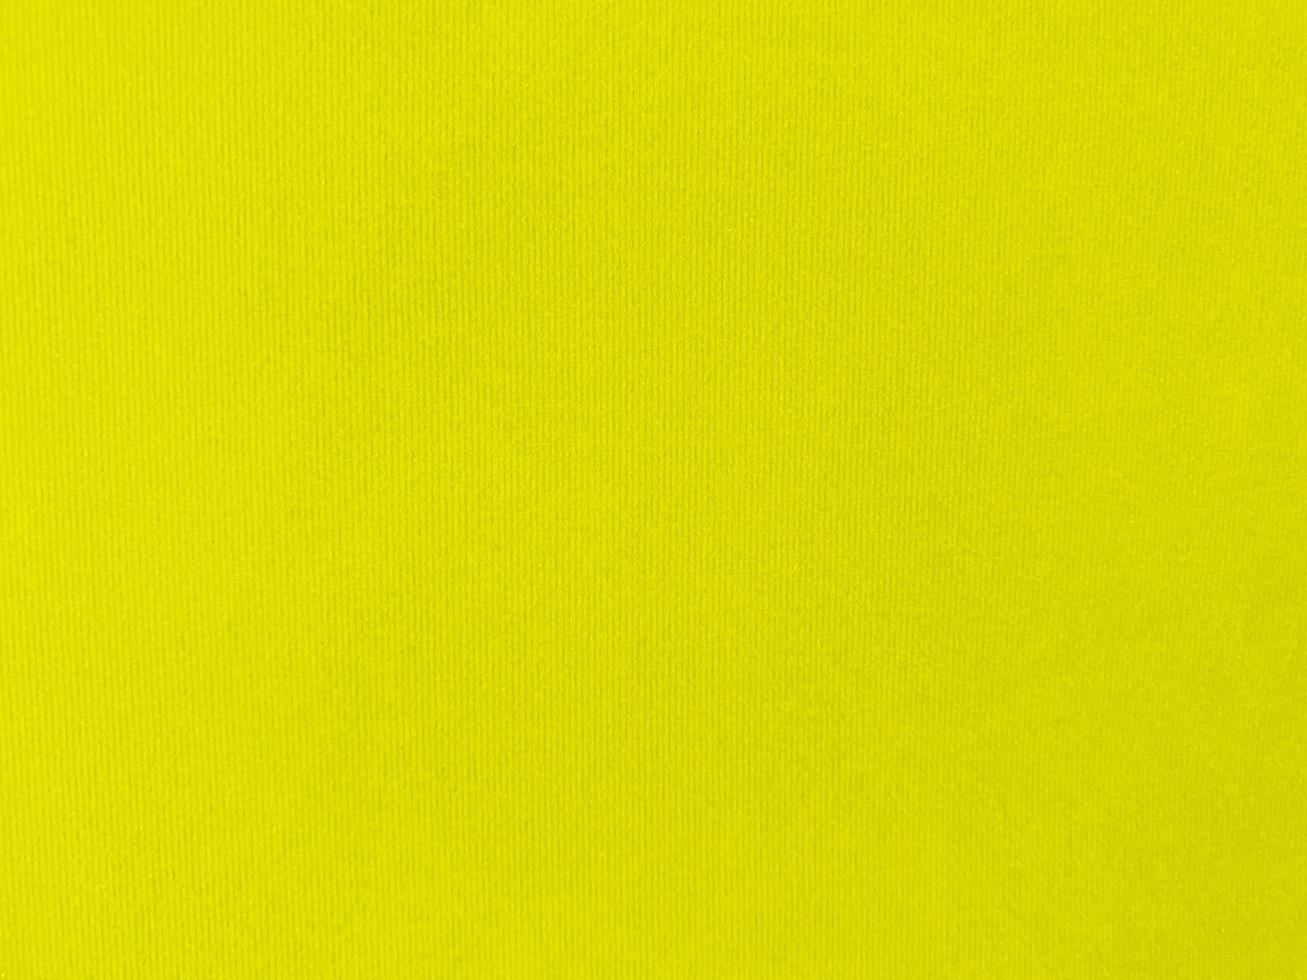 texture de tissu de velours jaune utilisée comme arrière-plan. fond de tissu jaune vide de matière textile douce et lisse. il y a de l'espace pour le texte. photo